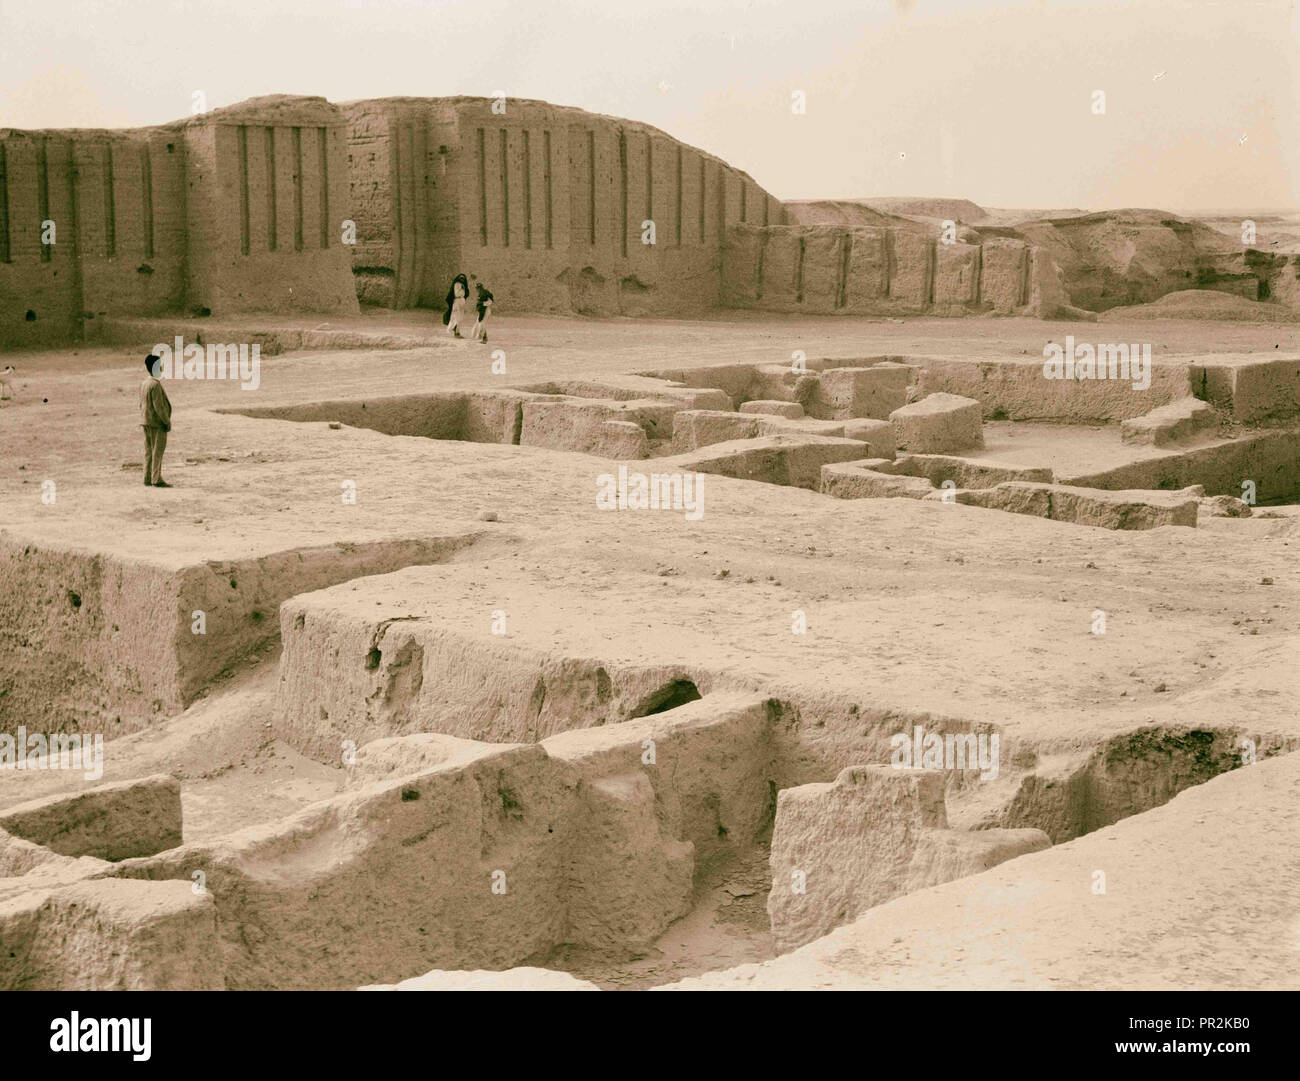 Irak. Kis. (Tel-Uhaimir). Die herrschende Stadt unmittelbar nach der Sintflut. Blick auf die Ruinen mit großen offenen Gerichte. 1932, Irak Stockfoto